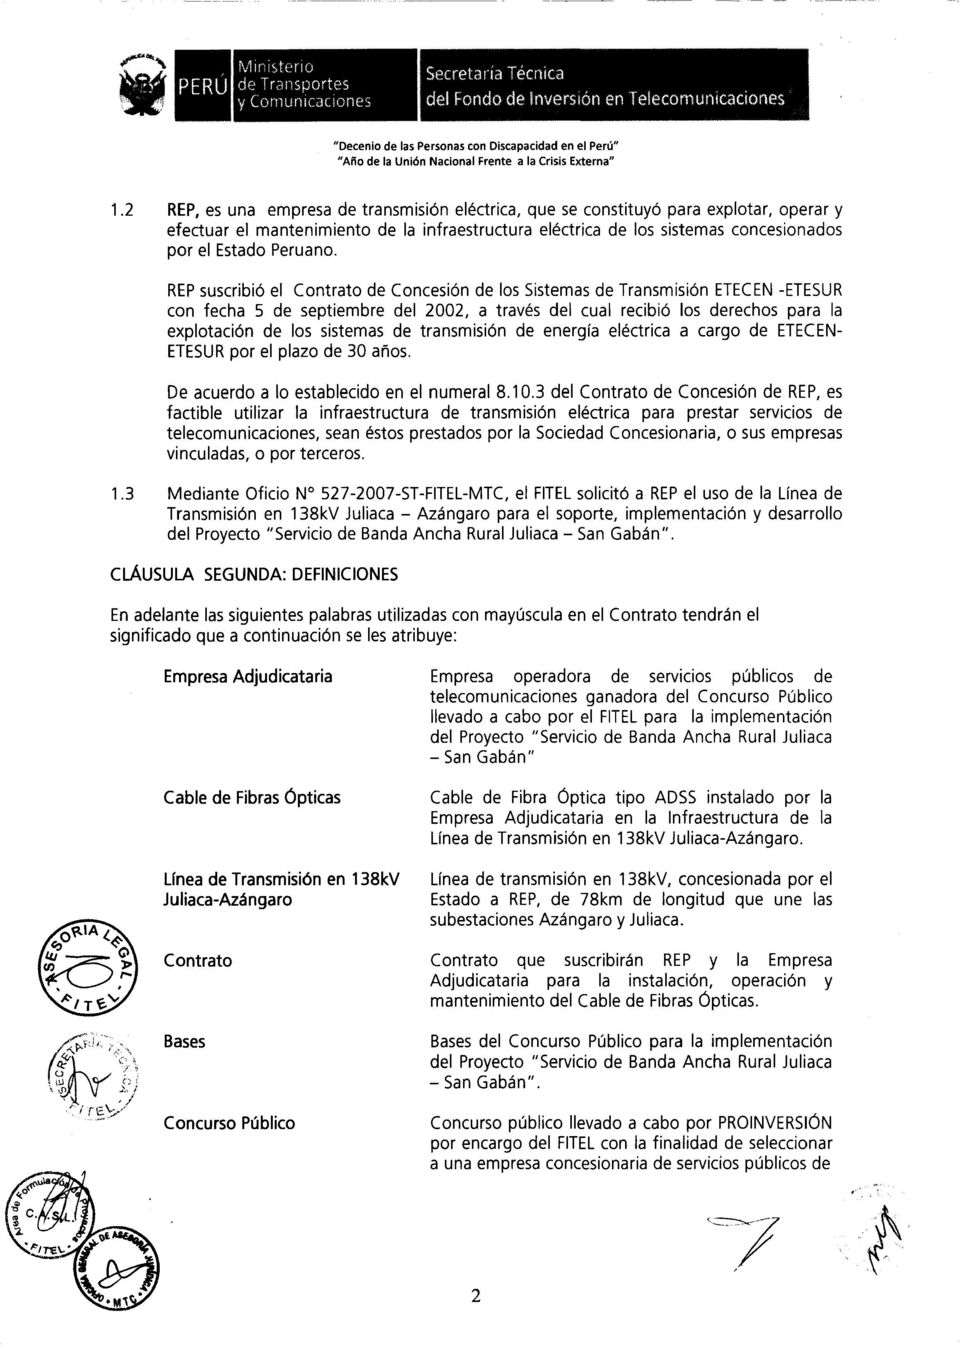 REP suscribió el Contrato de Concesión de los Sistemas de Transmisión ETECEN -ETESUR con fecha 5 de septiembre del 2002, a través del cual recibió los derechos para la explotación de los sistemas de